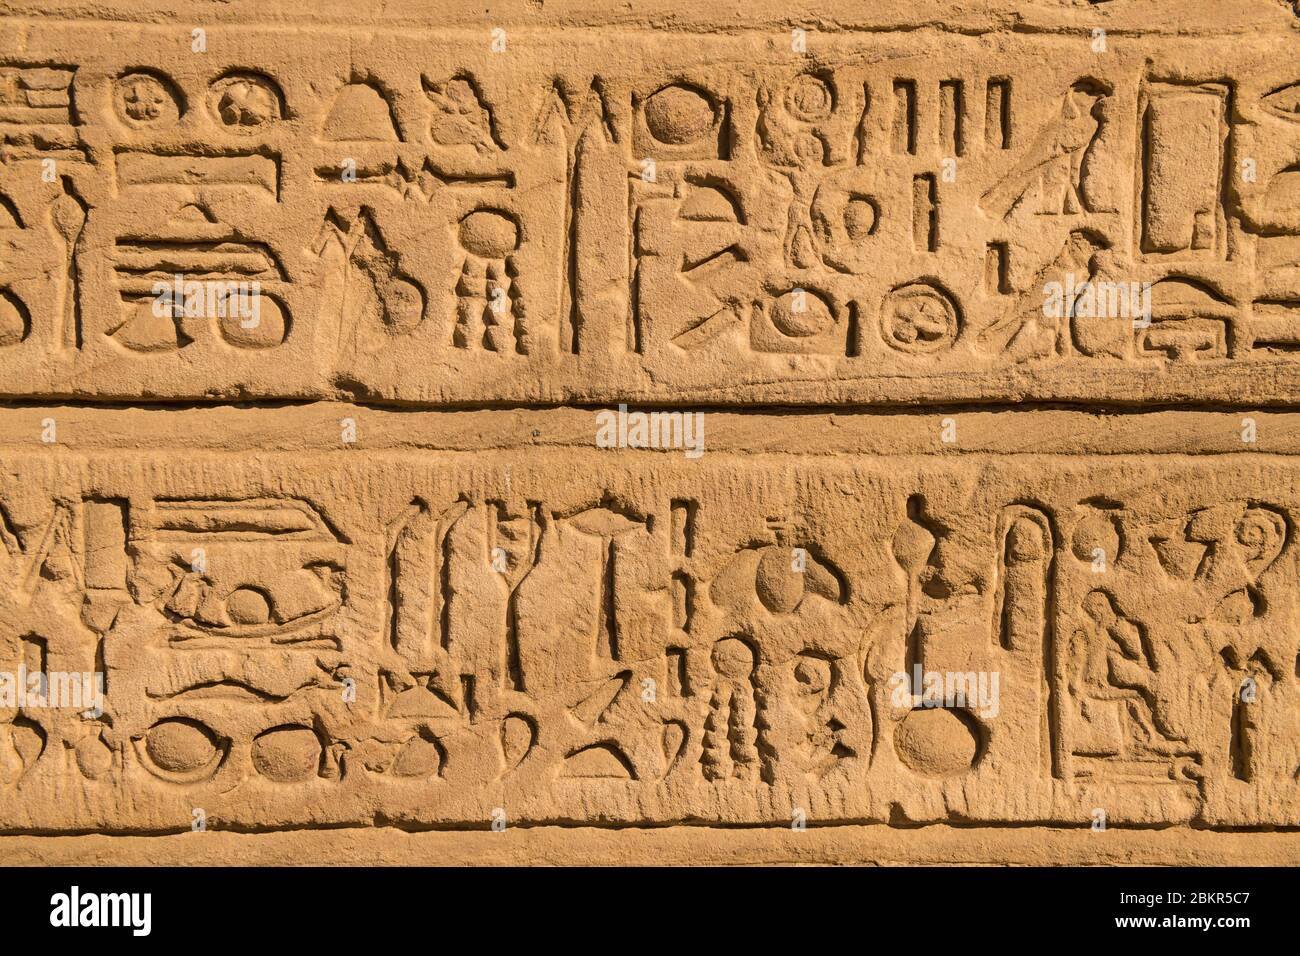 Egipto, Alto Egipto, valle del Nilo, Edfu, jeroglíficos en bajorrelieves del templo de Horus Foto de stock